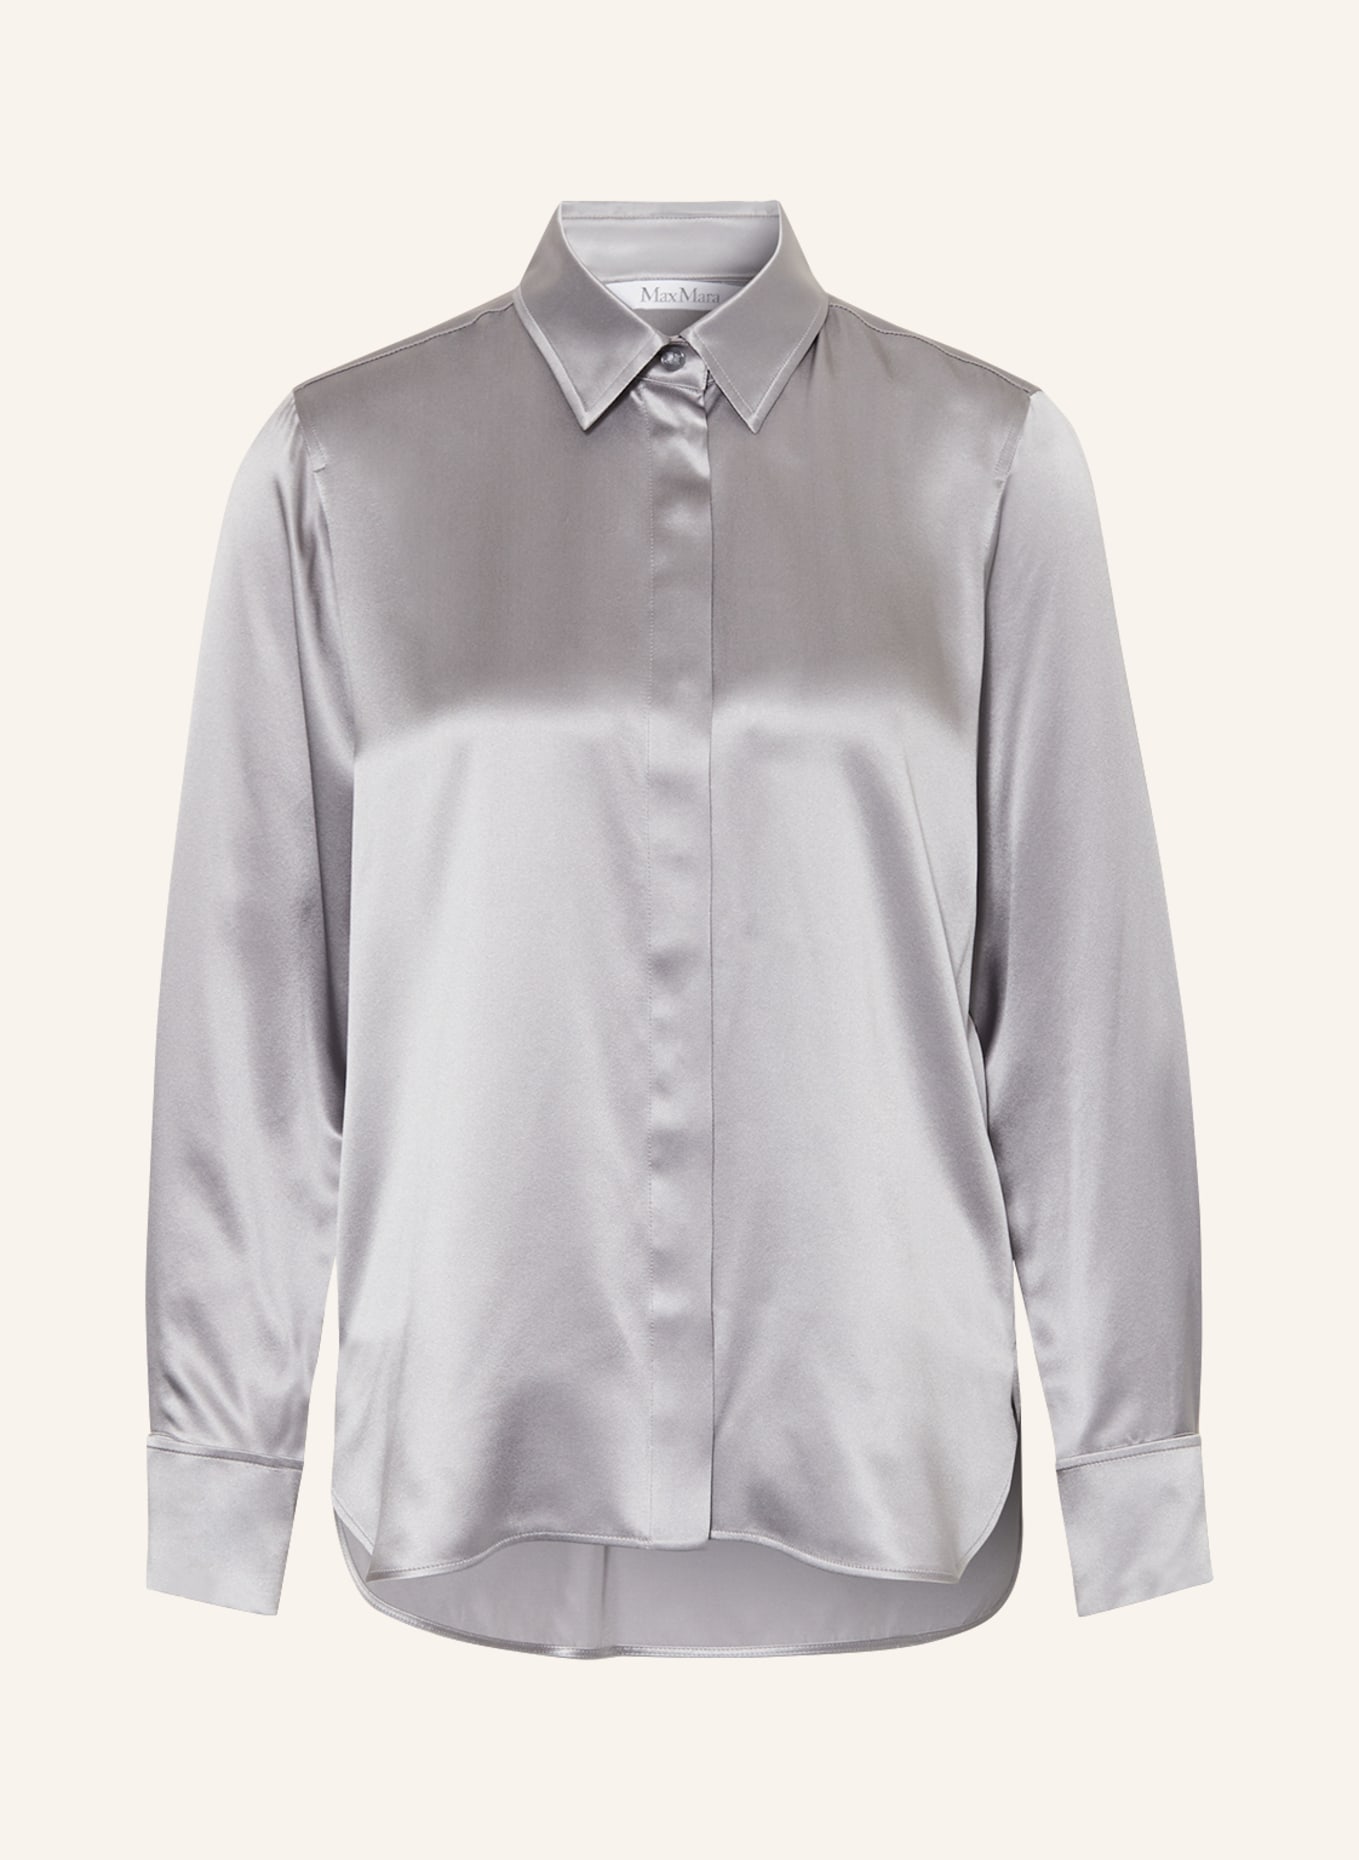 Max Mara Shirt blouse AIELLO made of silk, Color: GRAY (Image 1)